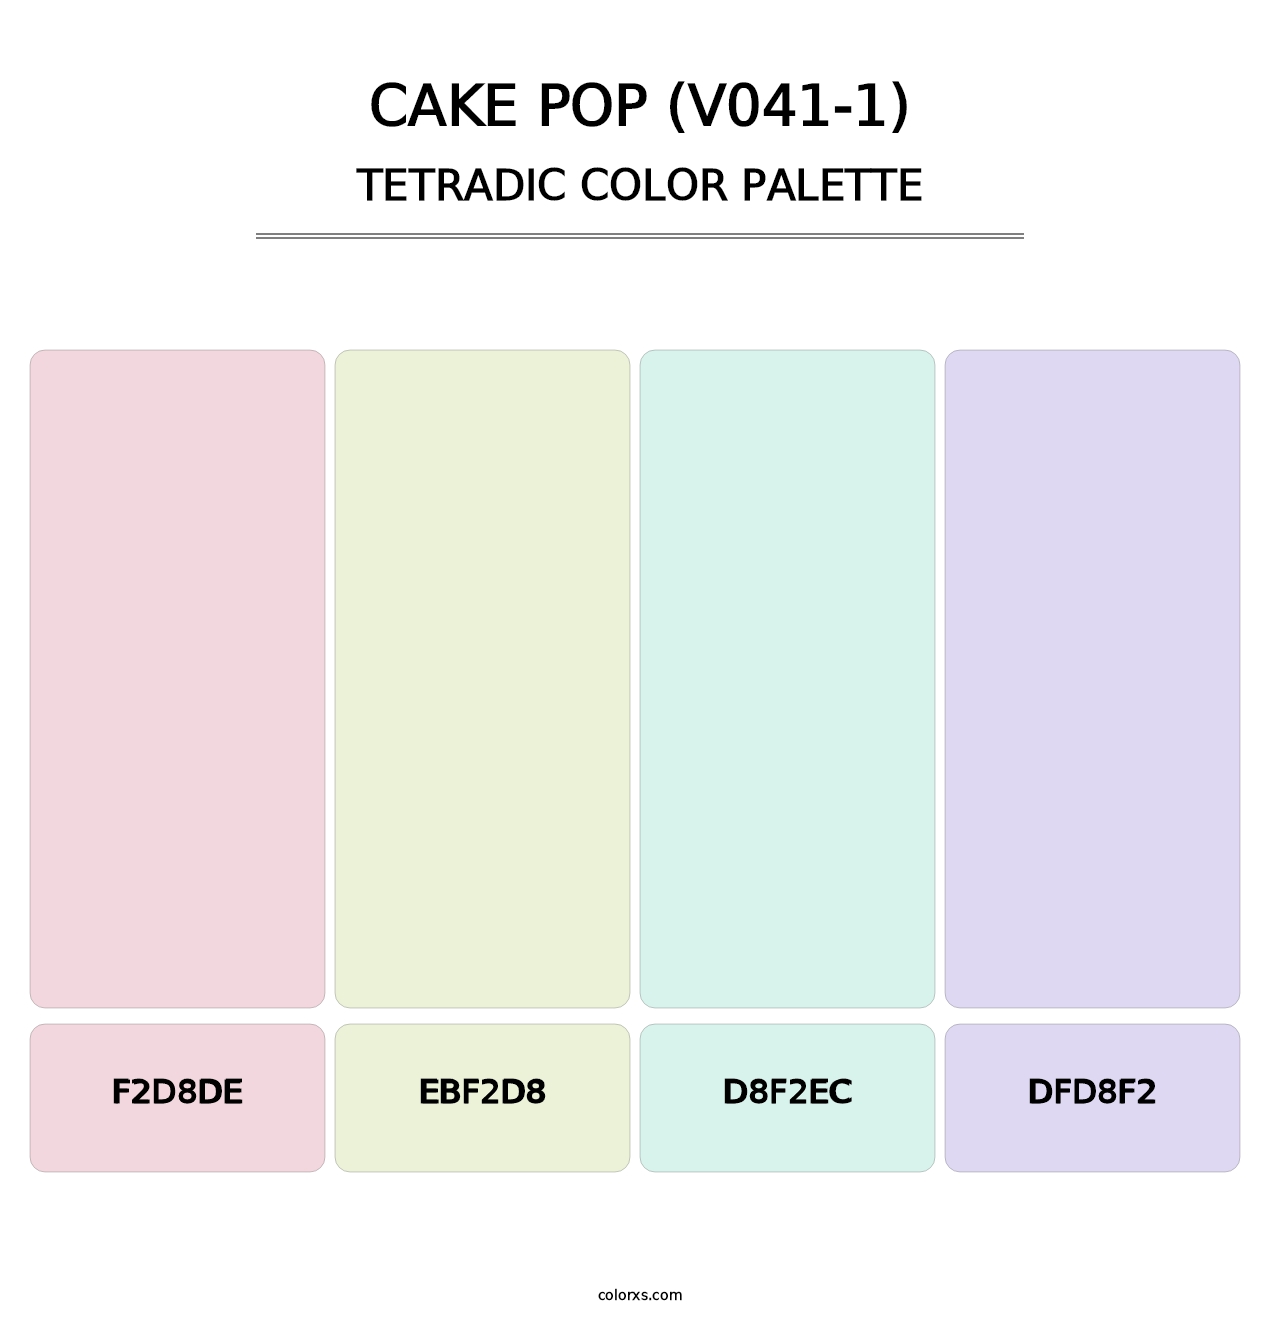 Cake Pop (V041-1) - Tetradic Color Palette